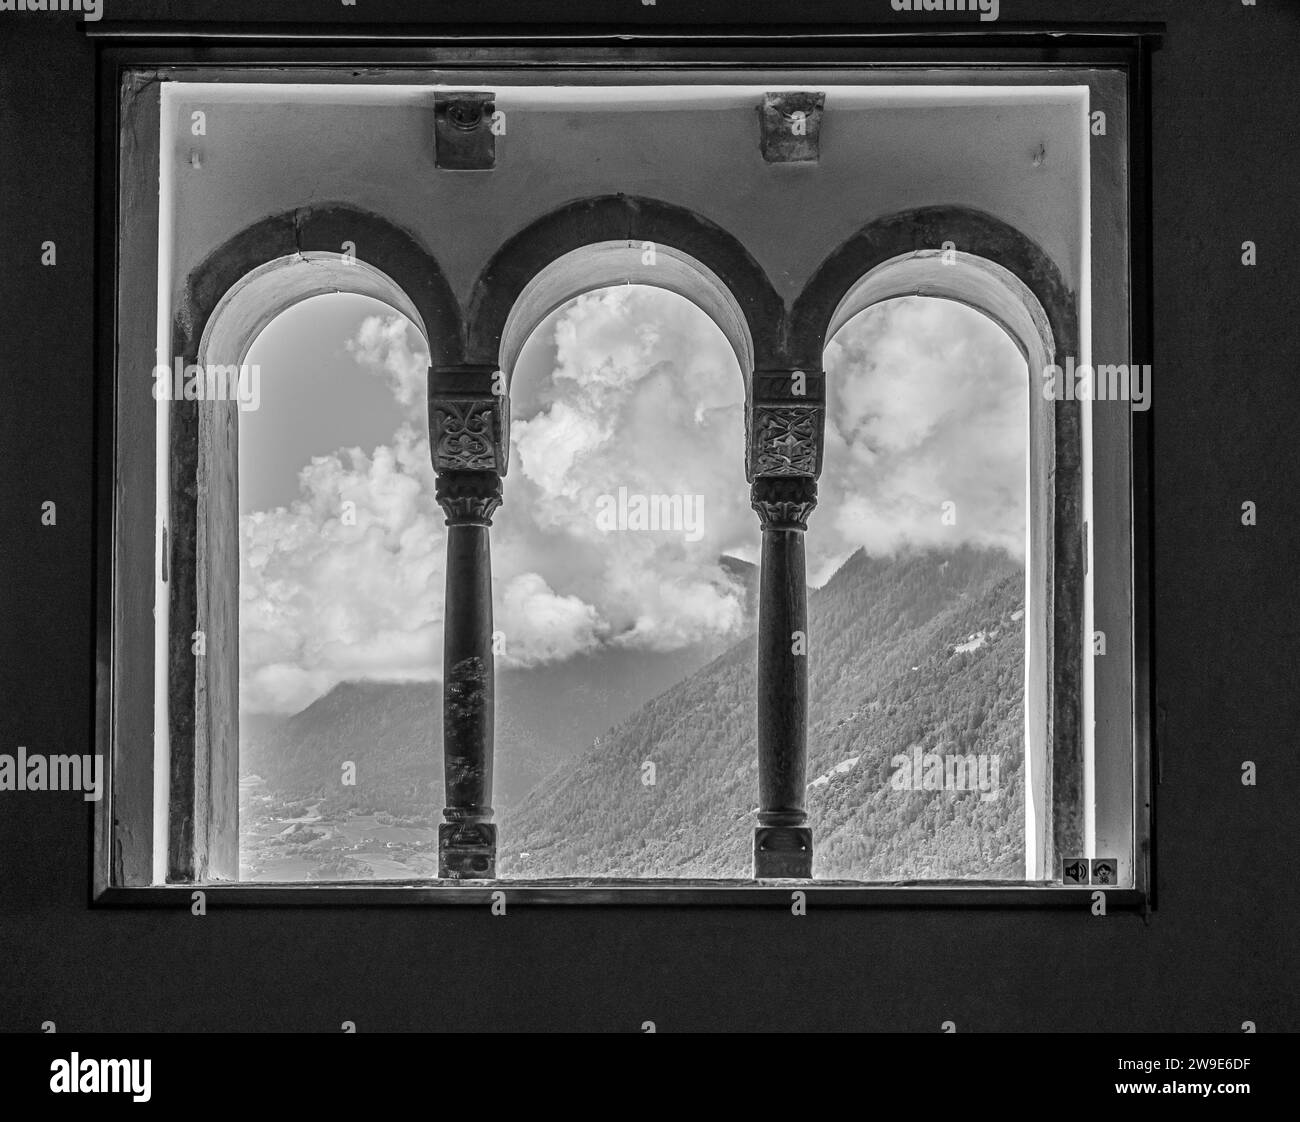 Tripla lancetta del Castello Tirolo in alto Adige vicino a Merano, provincia di Bolzano, Trentino alto Adige, italia - immagine in bianco e nero Foto Stock